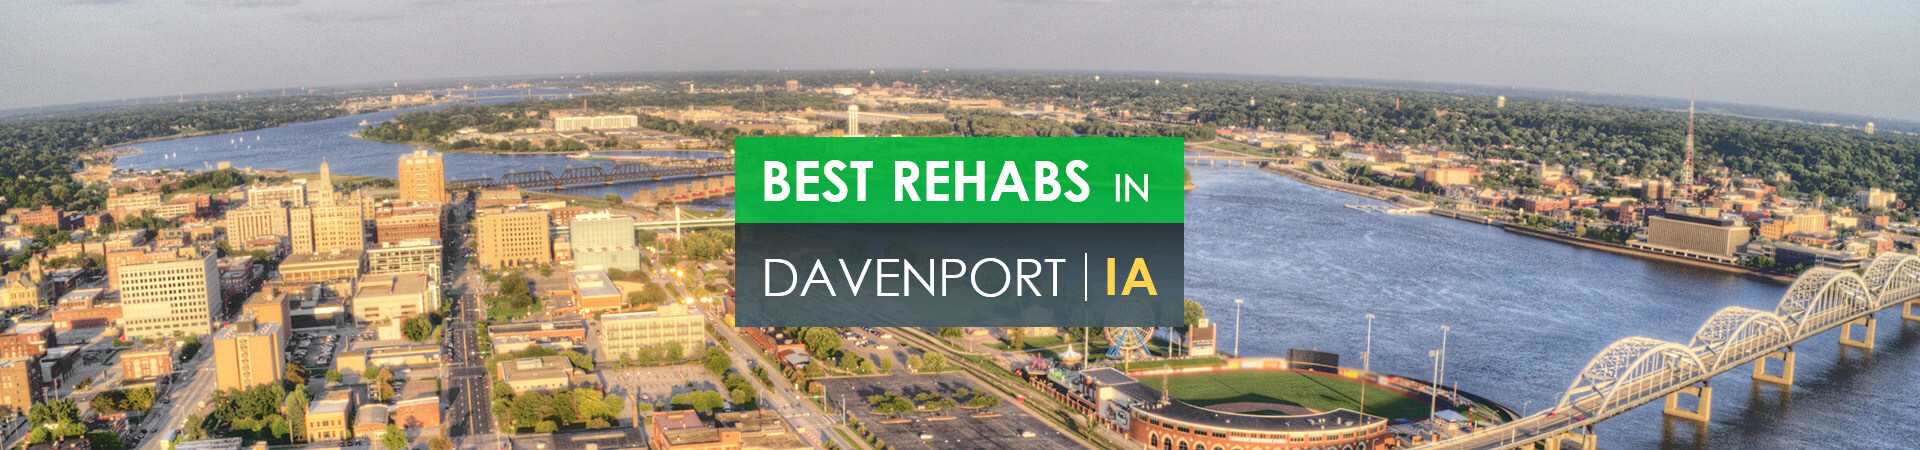 Best rehabs in Davenport, IA